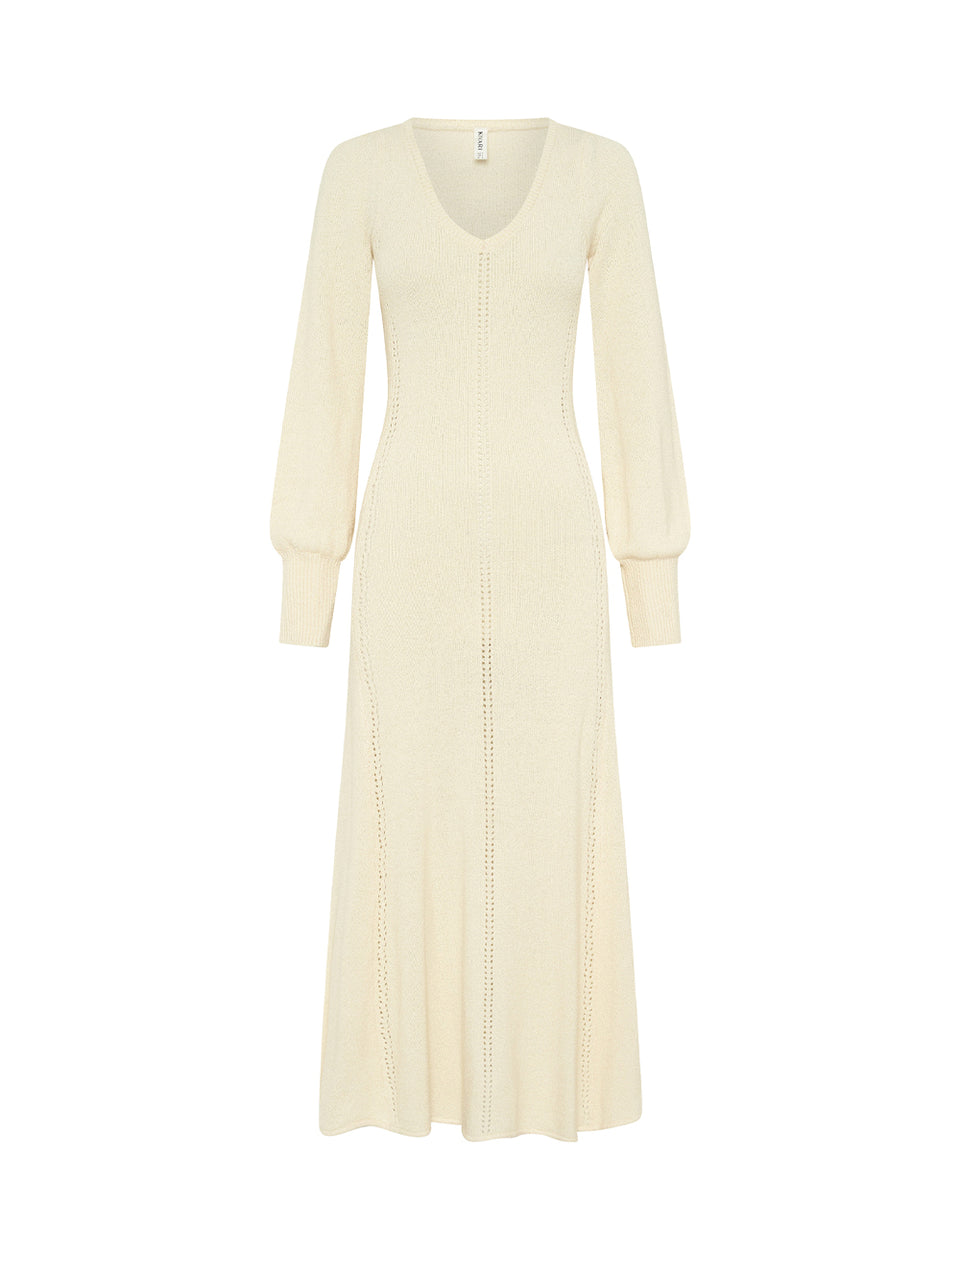 Cali Knit Dress KIVARI | Cream knit midi dress